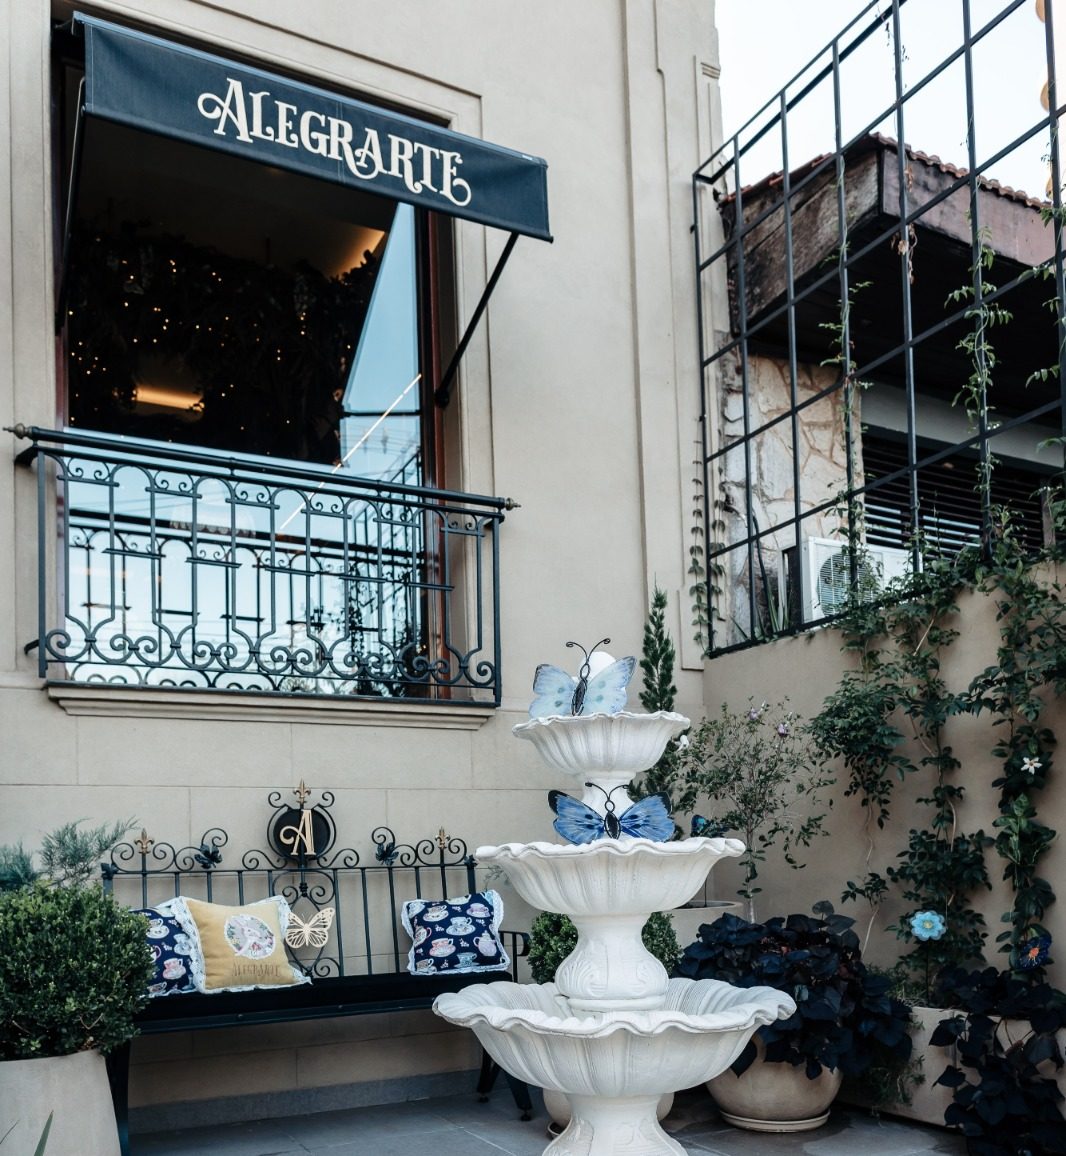 Posadas recibirá a Alegrarte, el primer Art Cafe en ciudad imagen-2